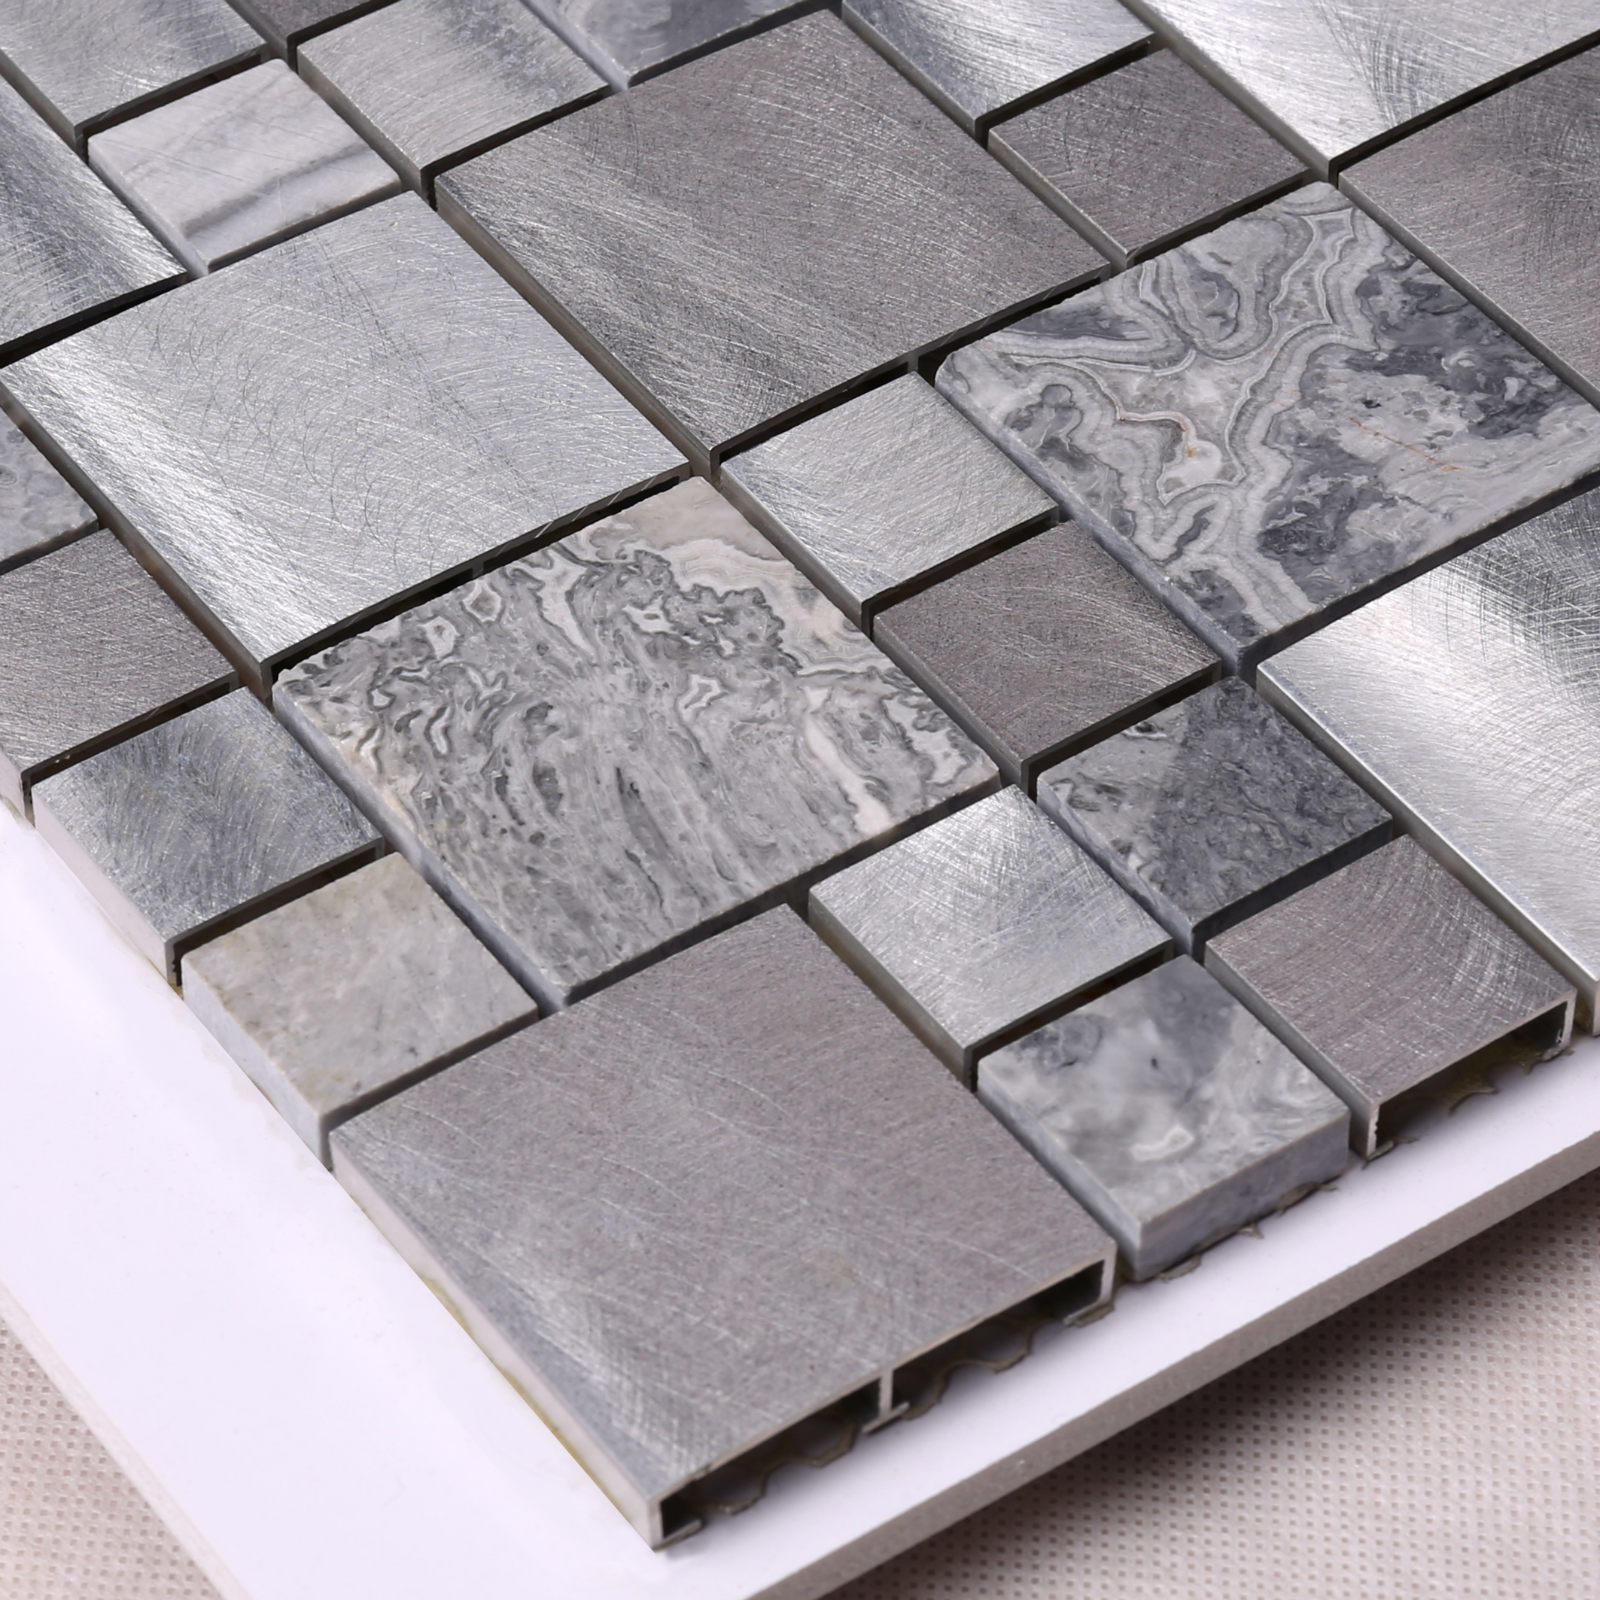 Aluminum Mix Stone Mosaic Tile for Washroom HLC117